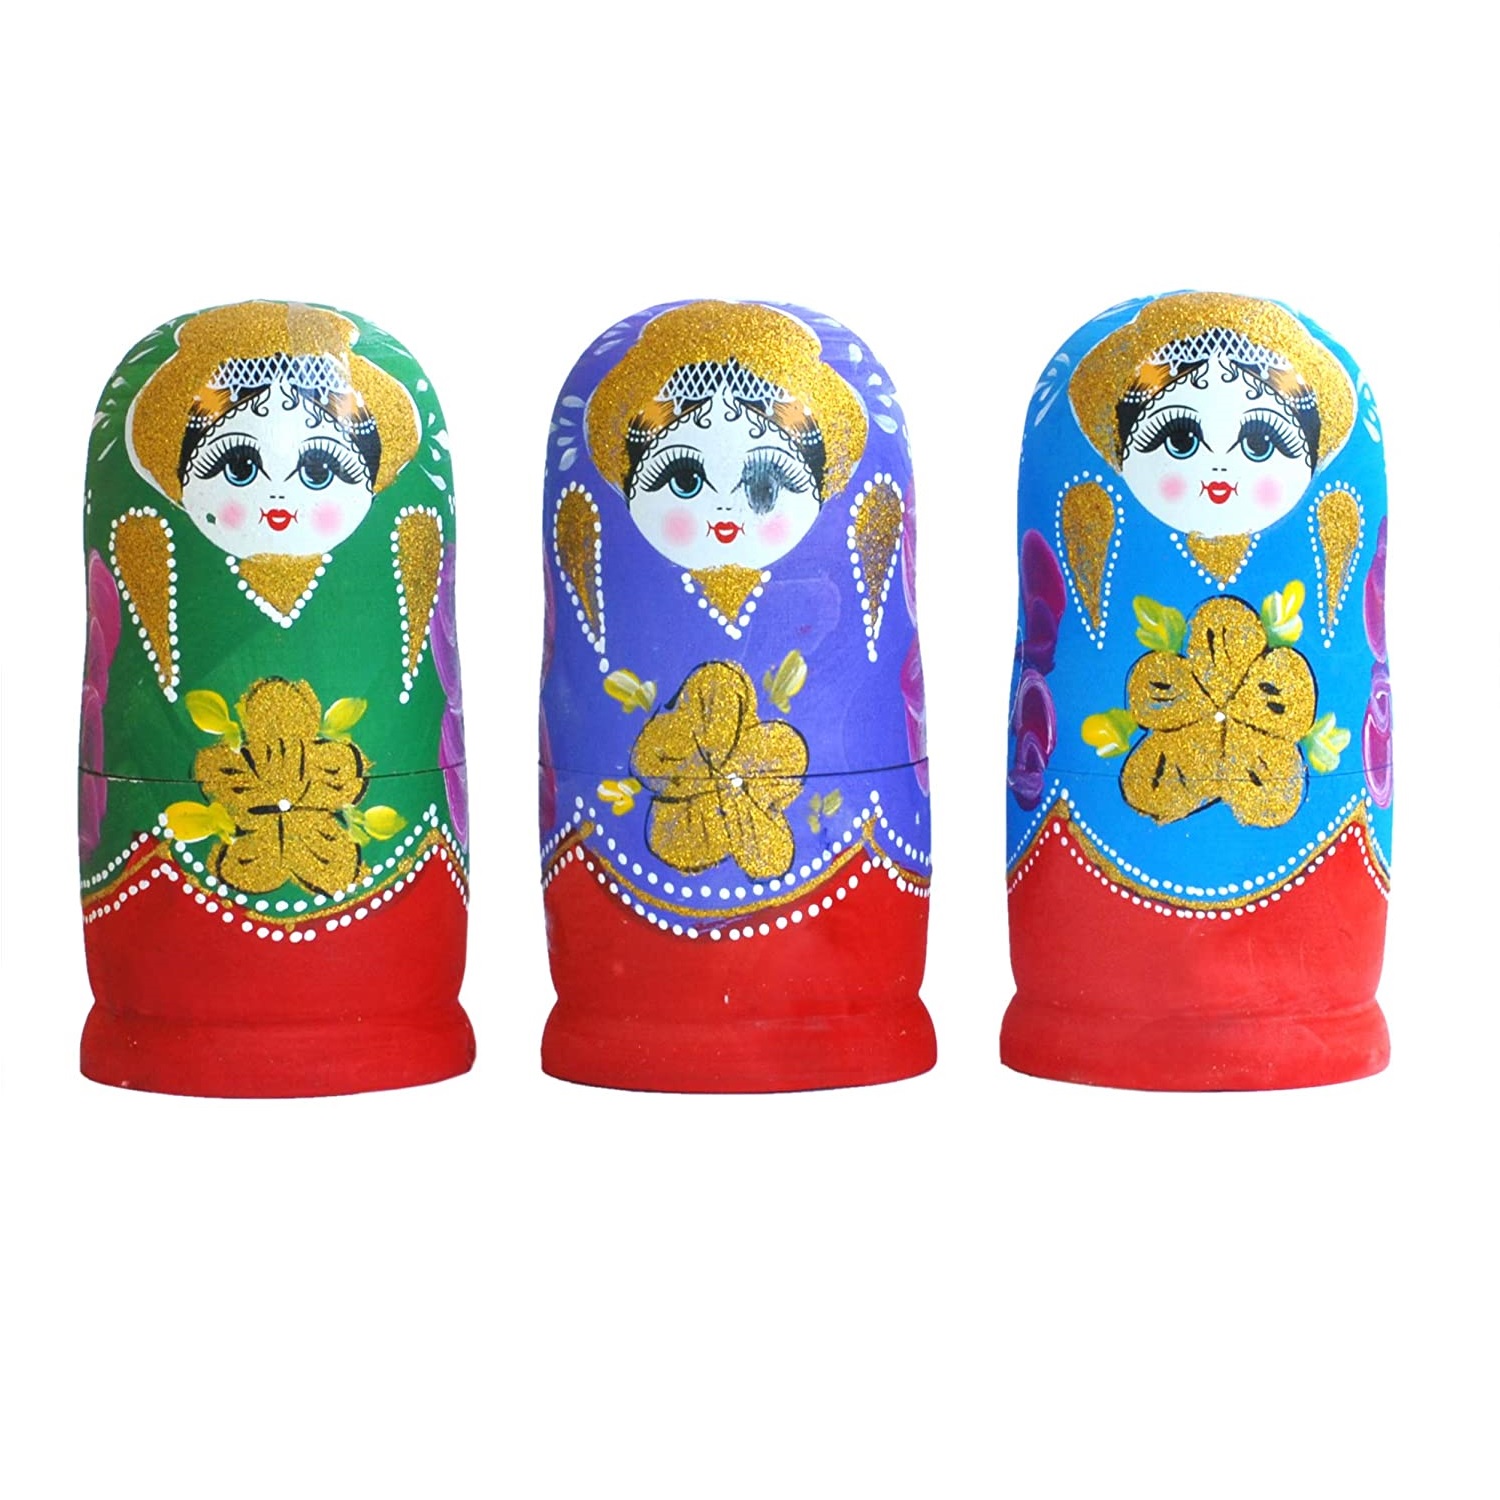 Matrioska 4 Pezzi in Legno Set da 4 Bambole Matriosca Coloratissime Originali dell’Ex URSS CCCP 